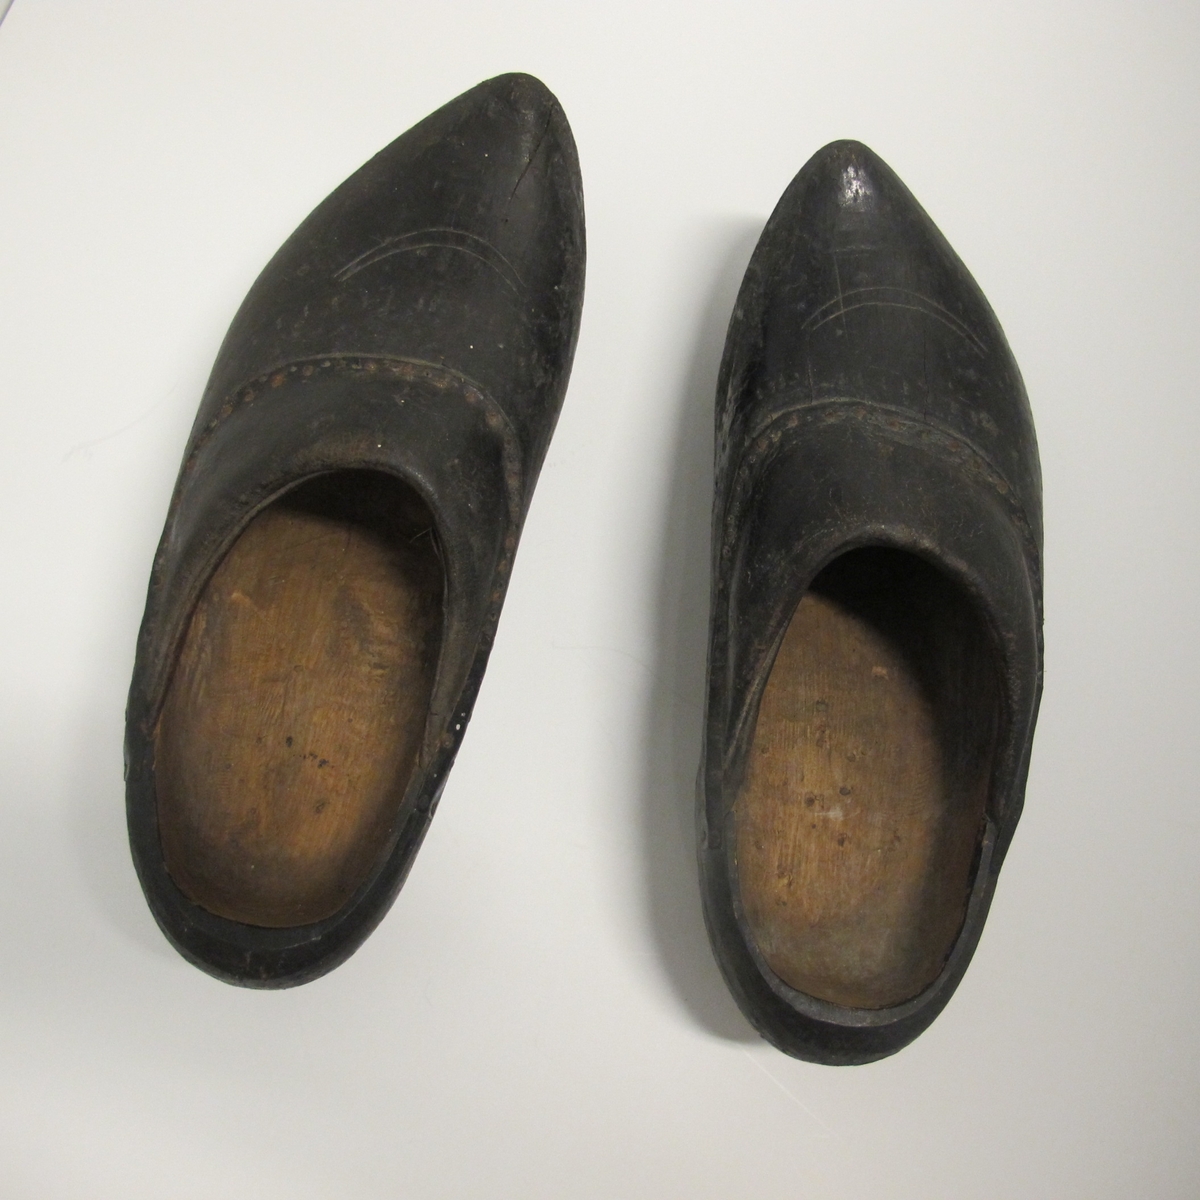 Skoene er sorte, med tre i bunn og i deler av kappen, der tuppen gå opp i en spiss foran. Den har noen innrissninger som ikke er tydet. Bare stykket nærmest vristen er av lær.